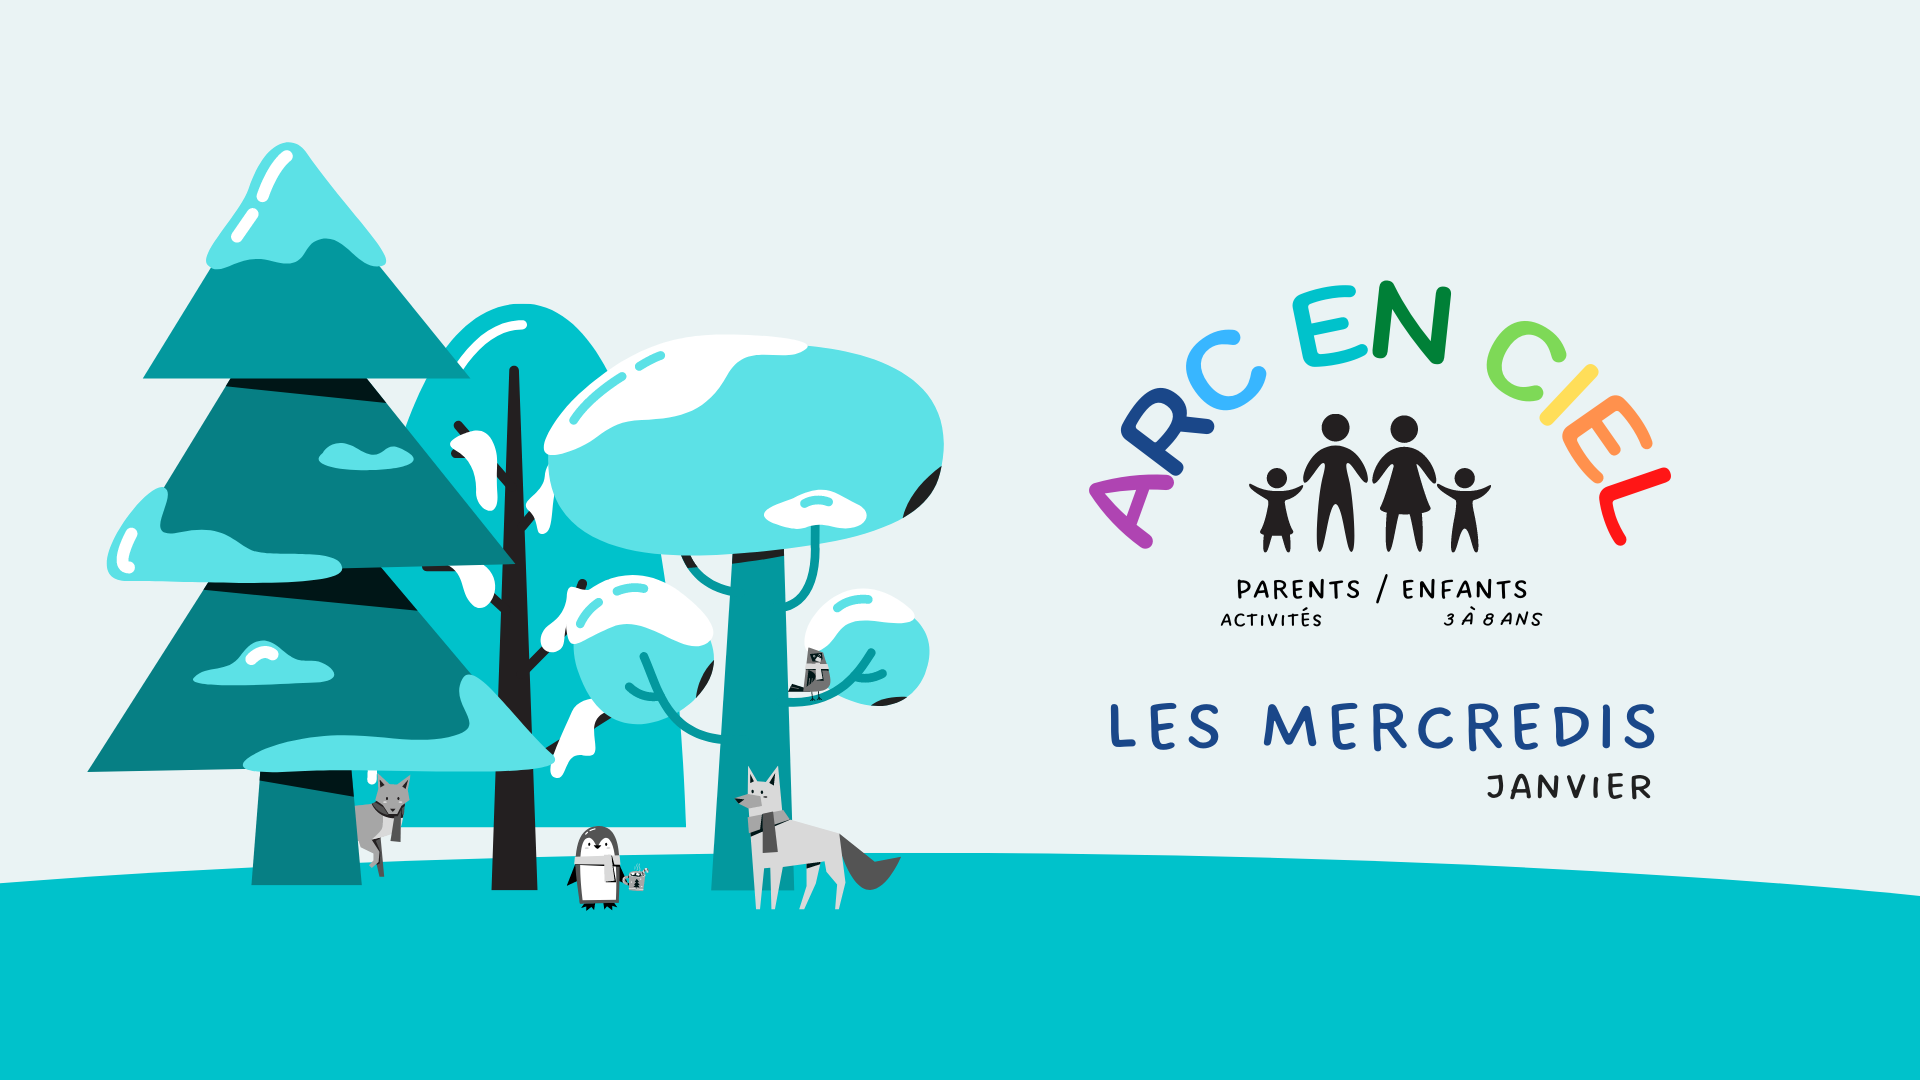 You are currently viewing Les Mercredis Arc en ciel – Janvier 2023 – Parents/enfants